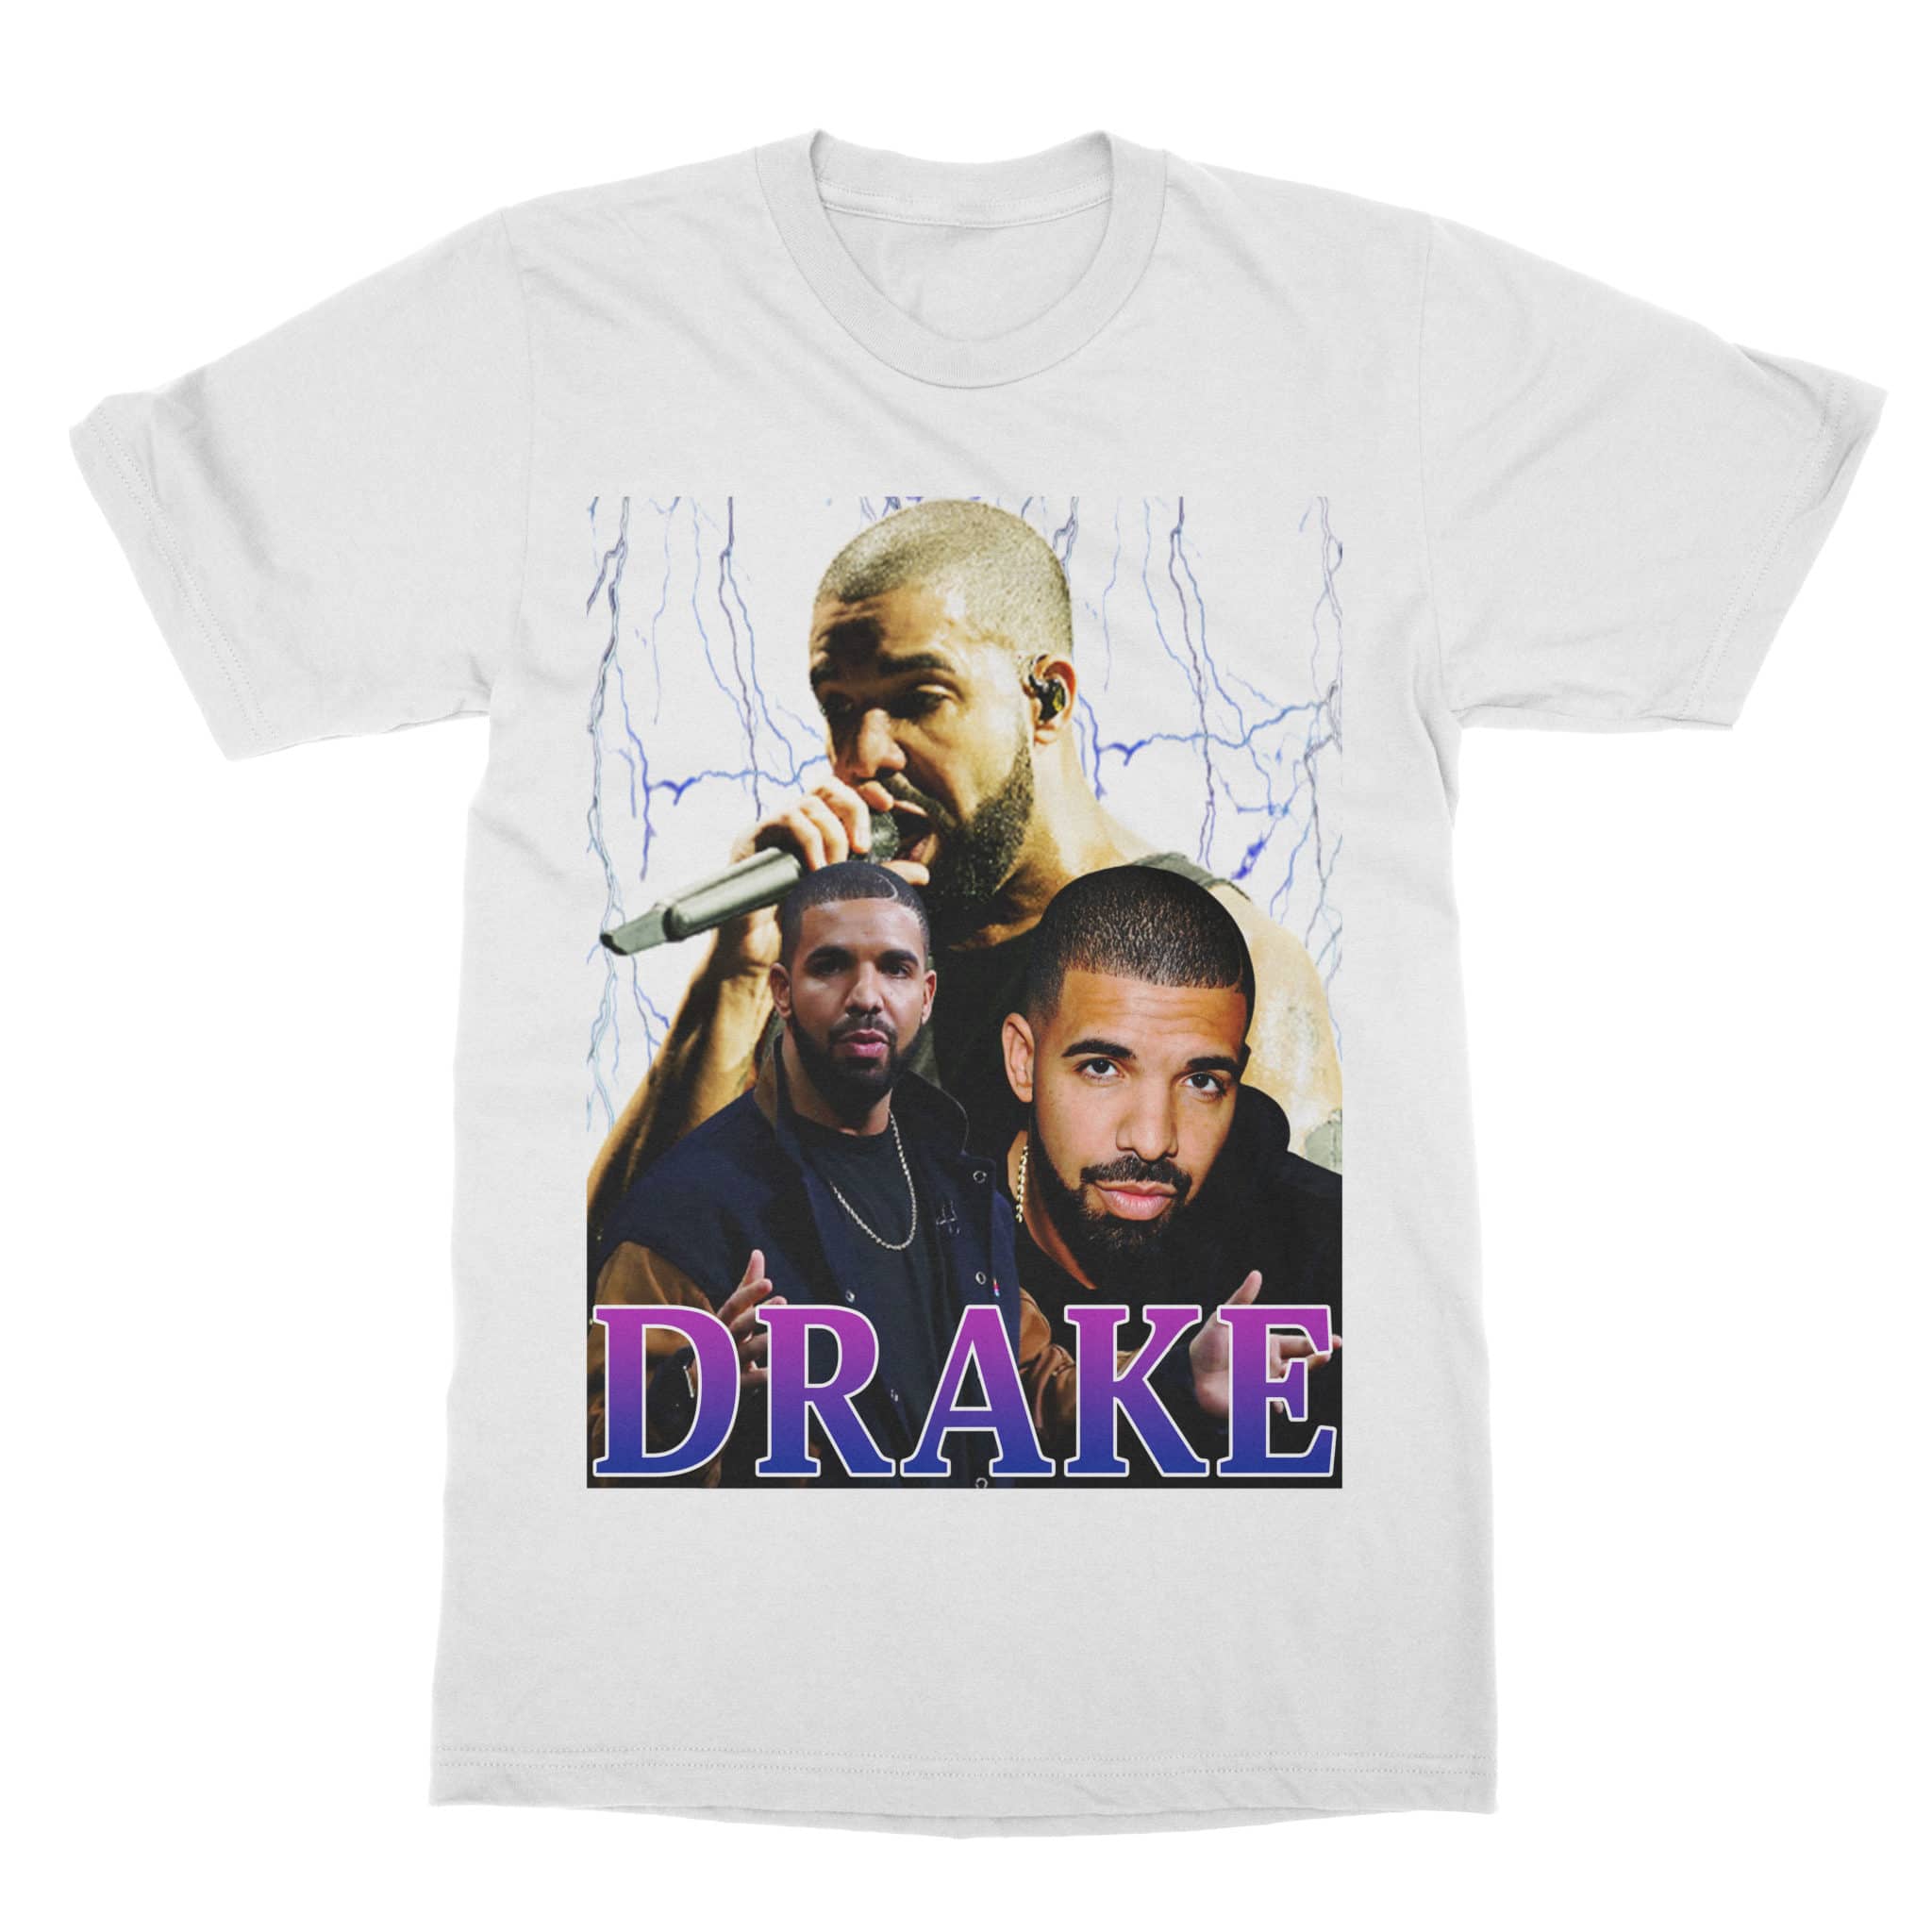 Vintage Style Drake T-Shirt